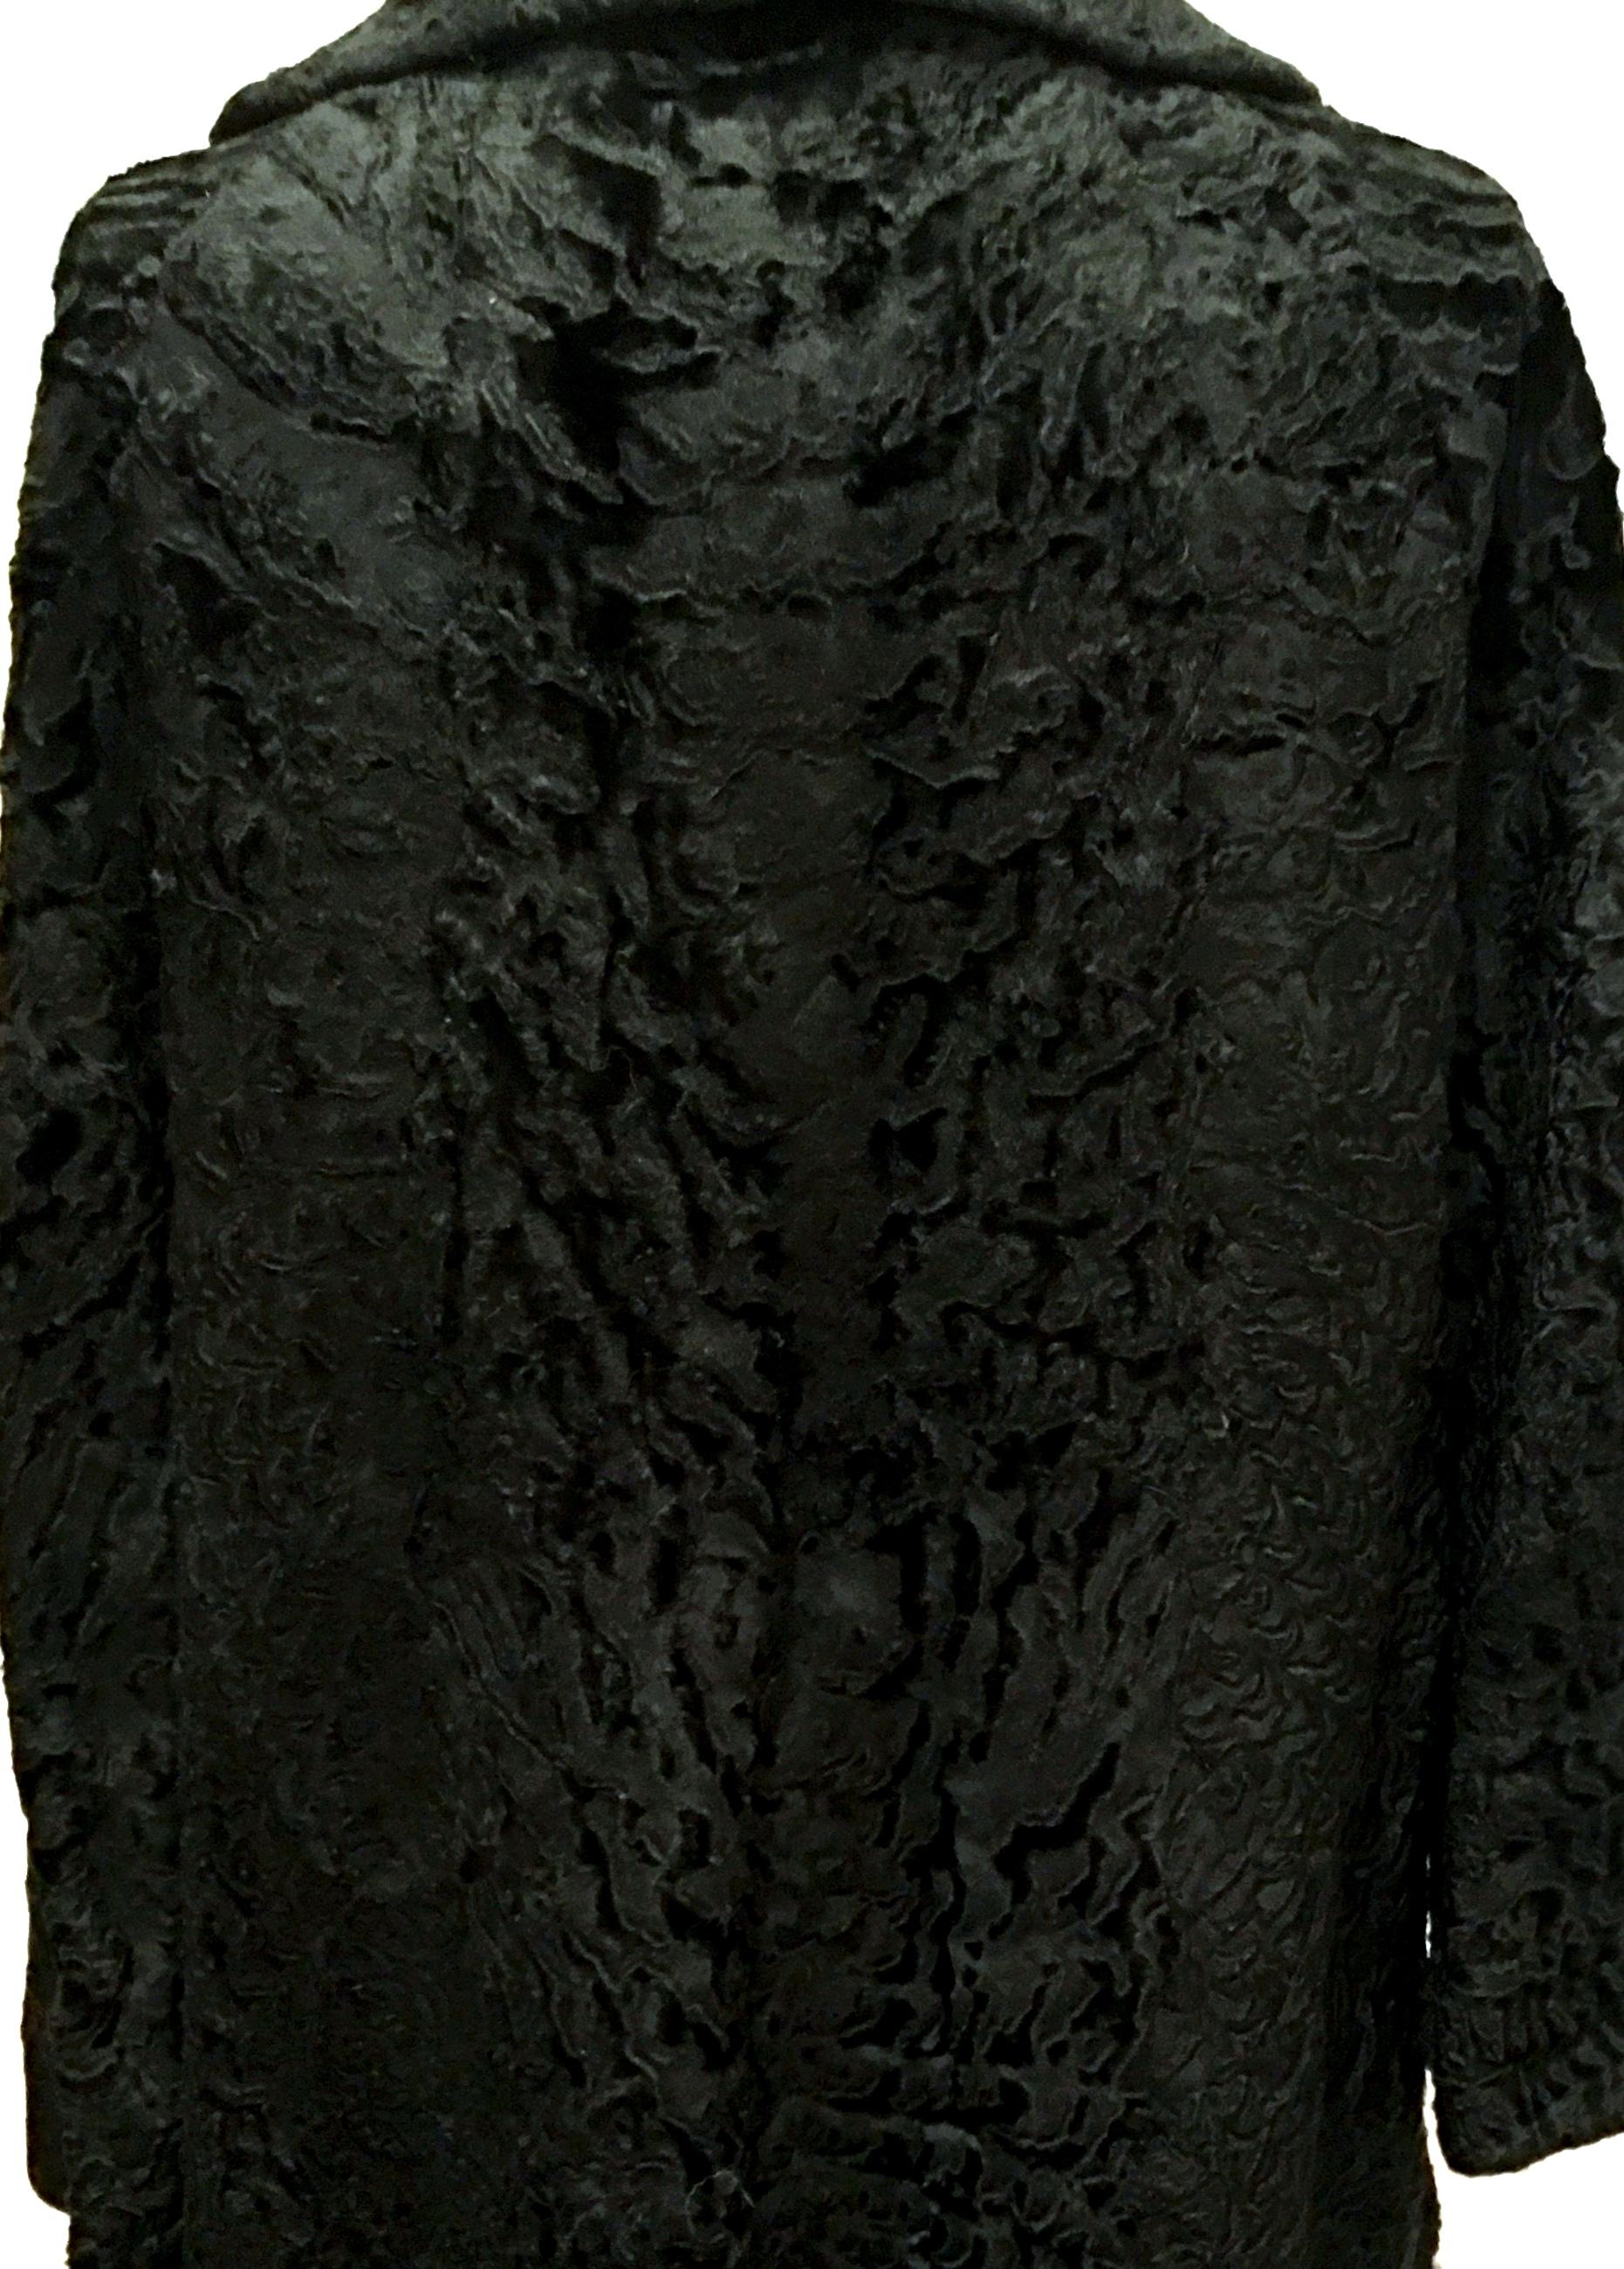 20th Century Sculptural Persian Jet Black Lamb Fur Swing Car Coat For Sale 4